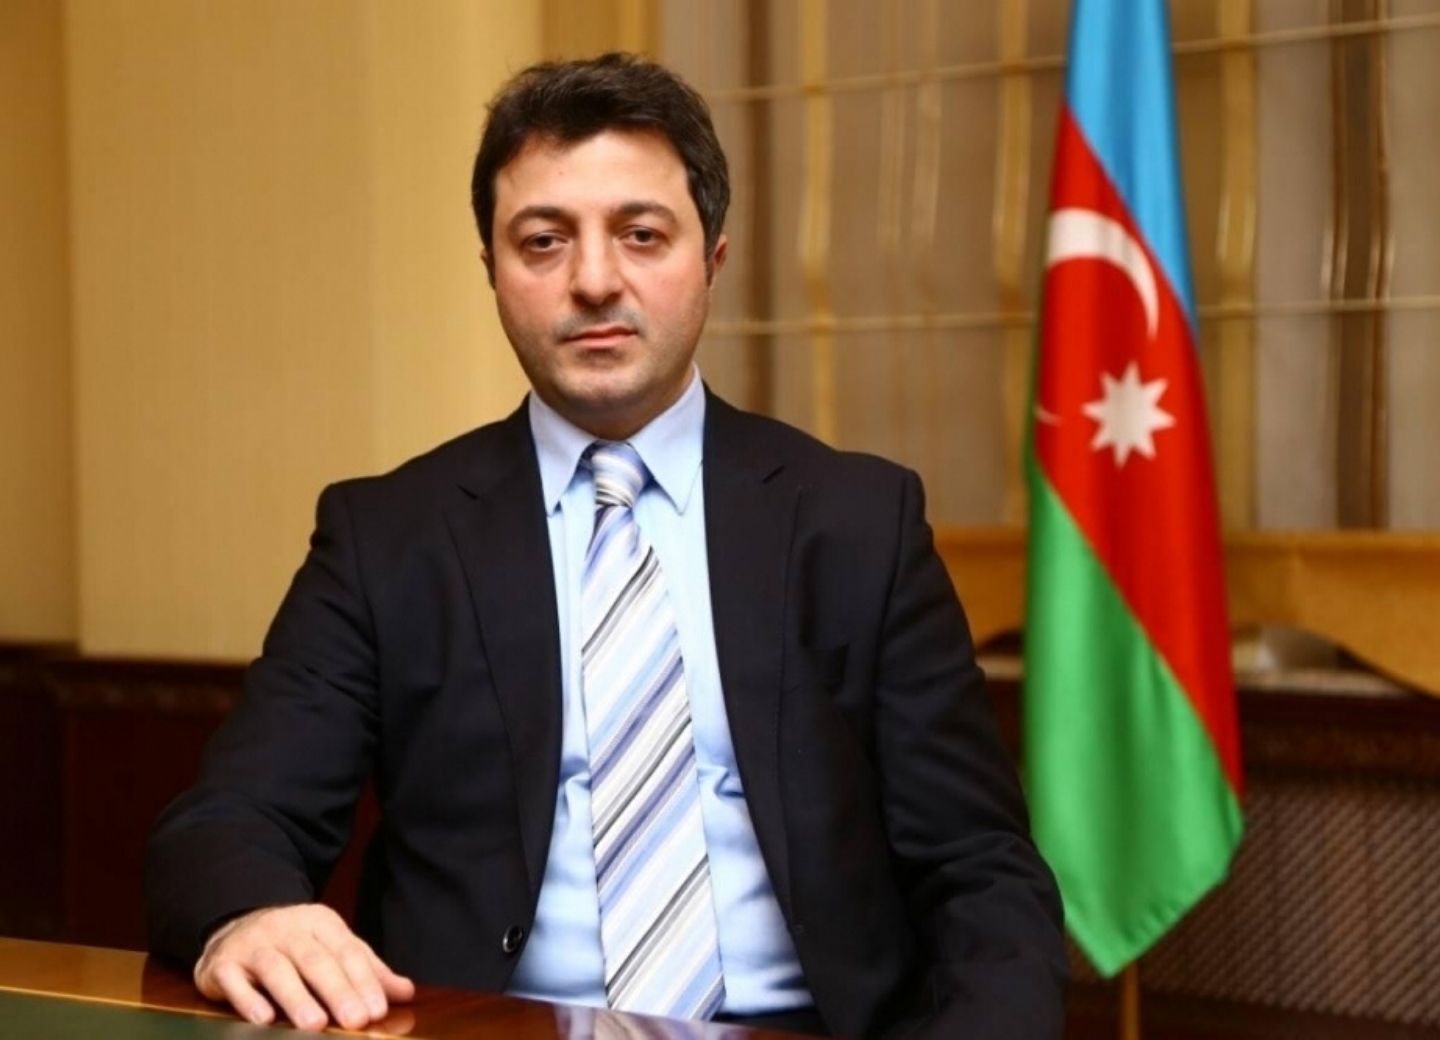 Турал Гянджалиев: Новая война может привести к более серьезным разрушениям в регионе